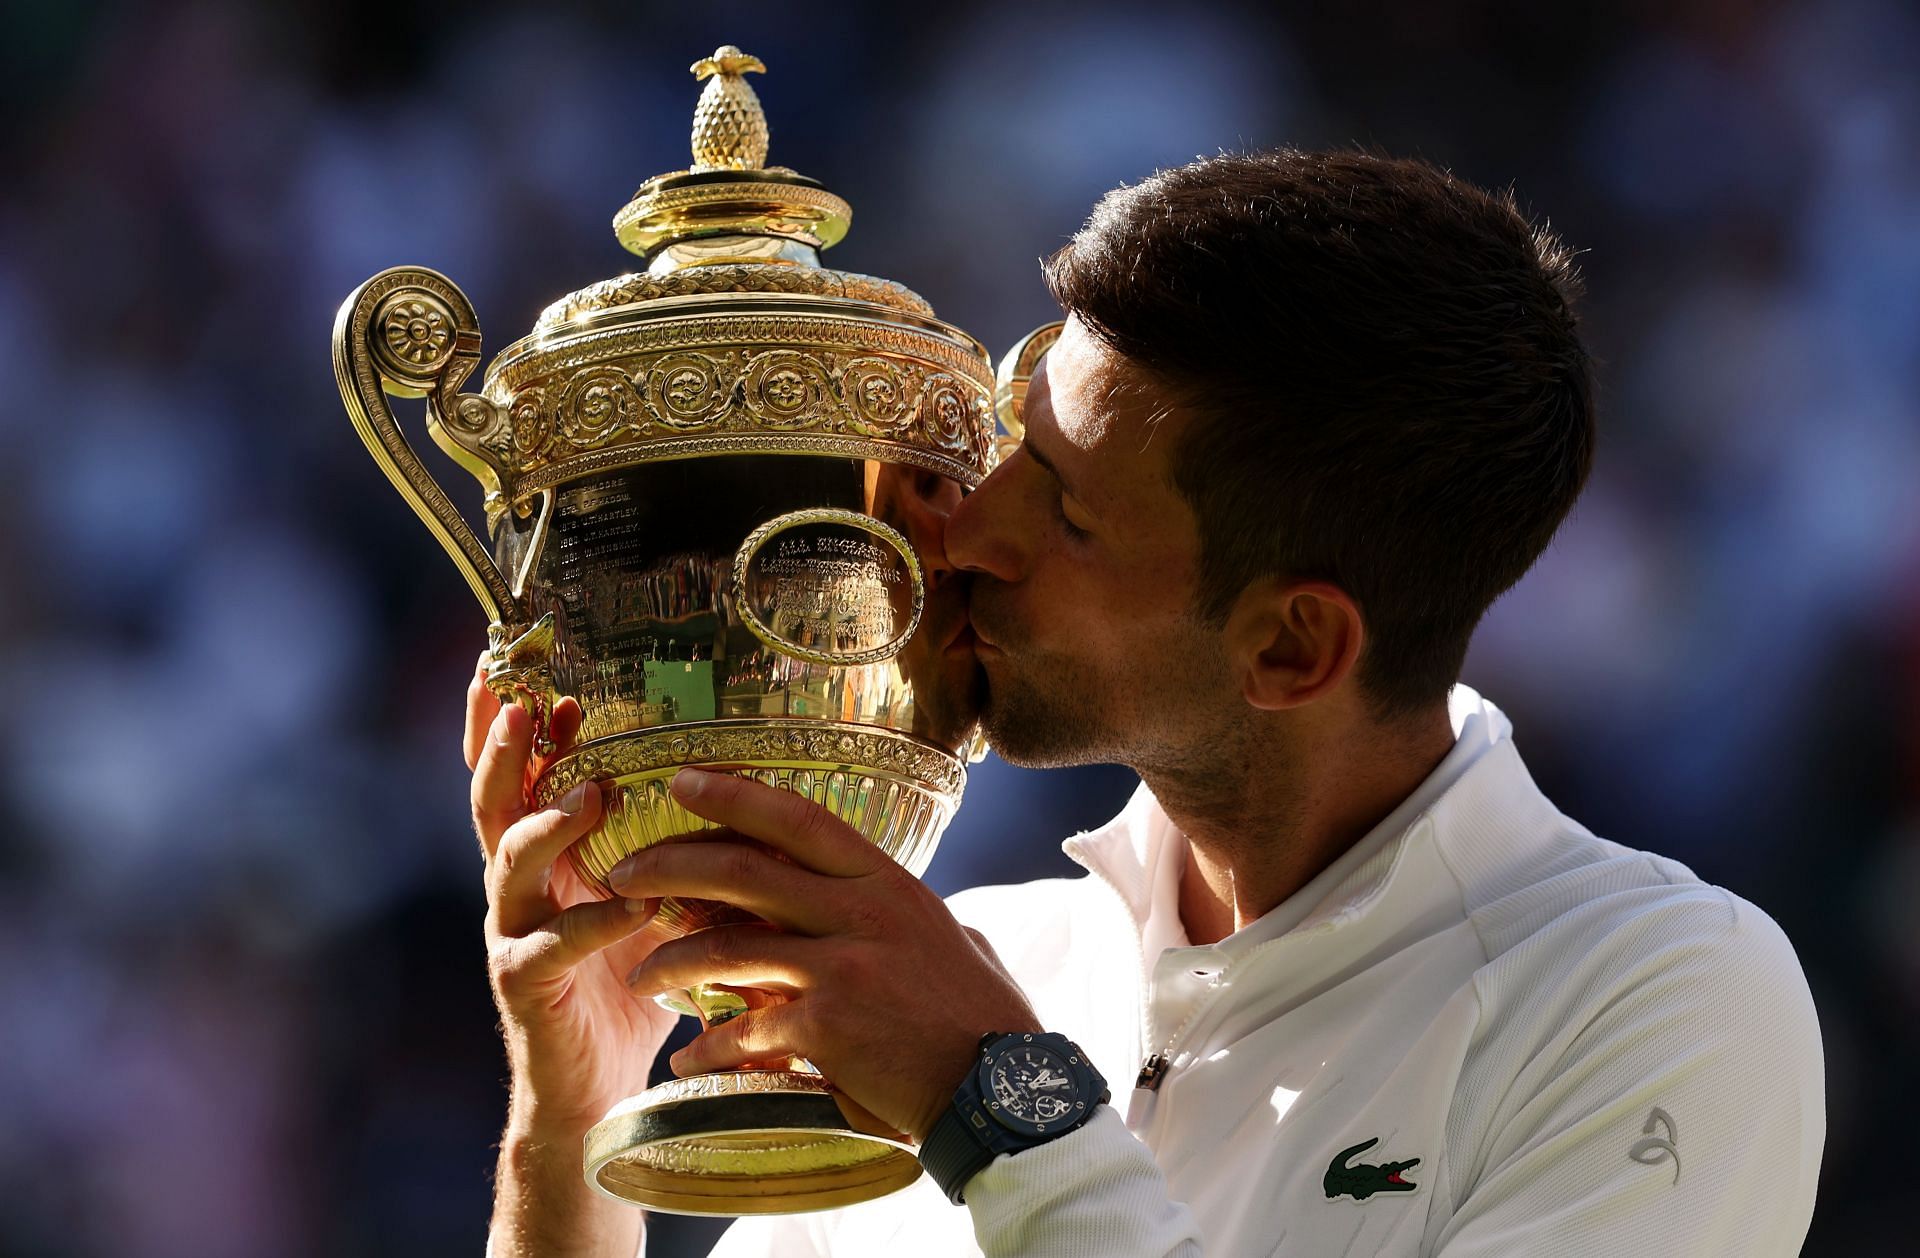 Novak Djokovic in action at Wimbledon 2022